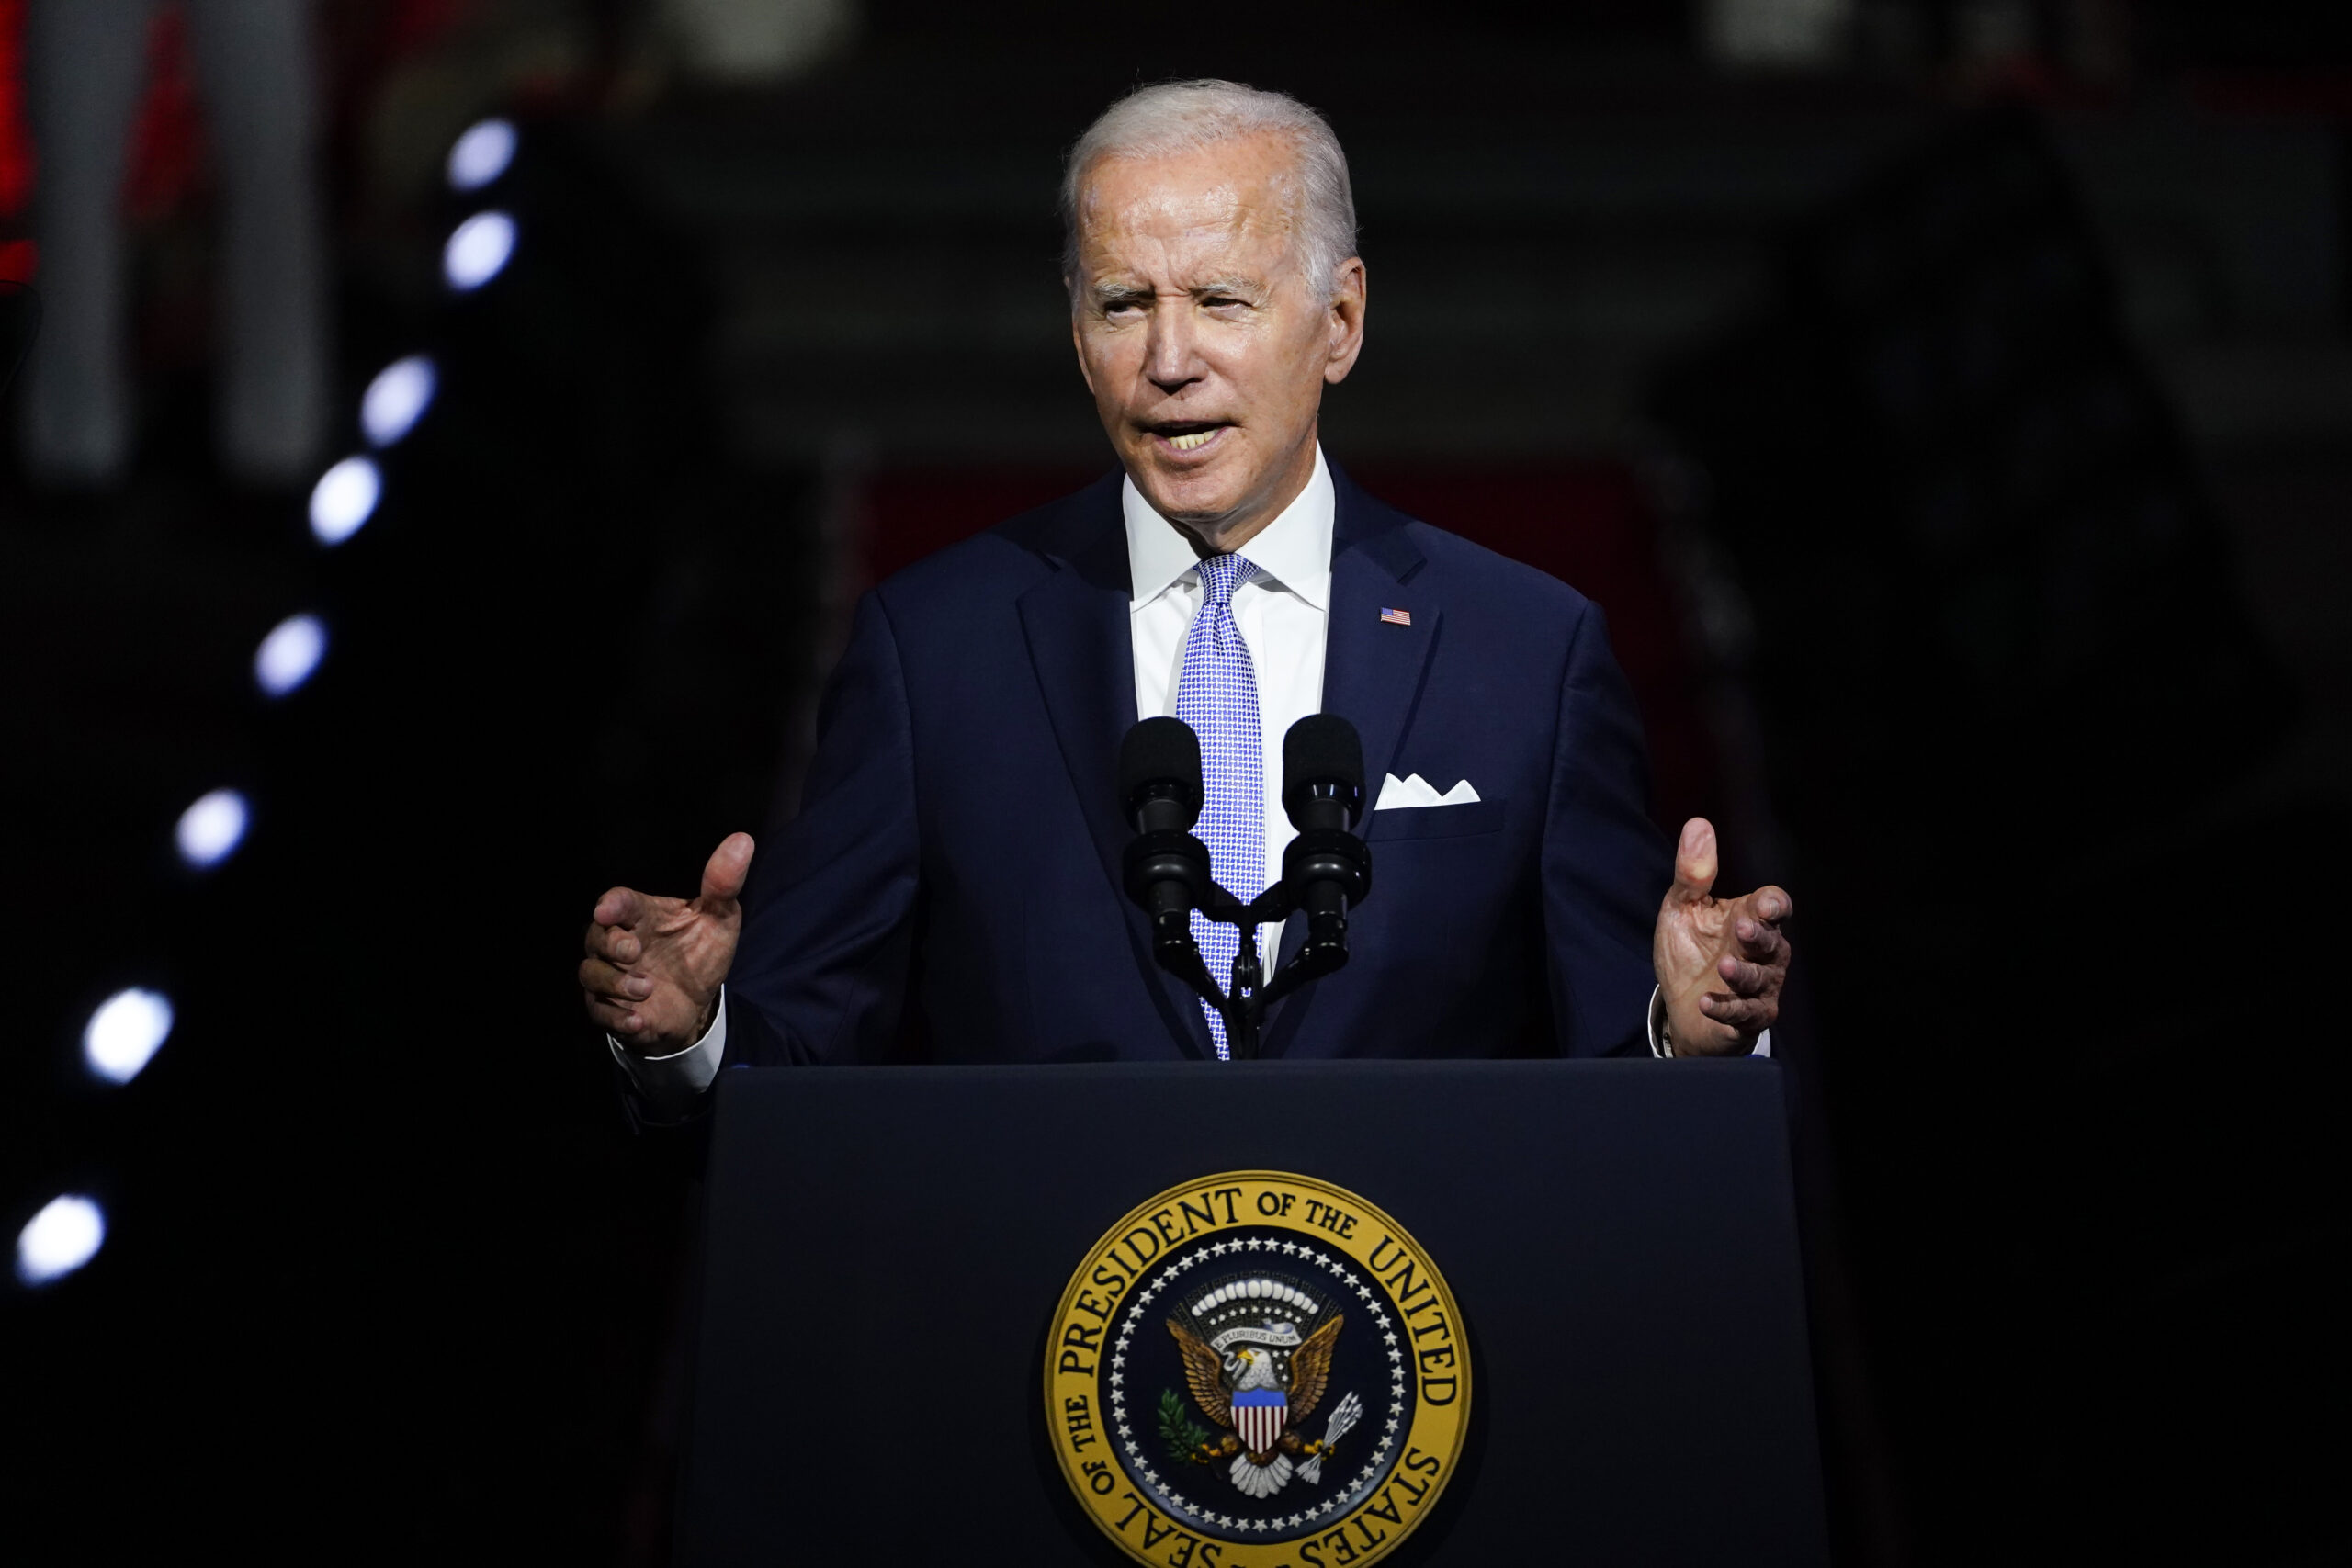 Biden at Independence Hall: Trump, allies threaten democracy – WABE